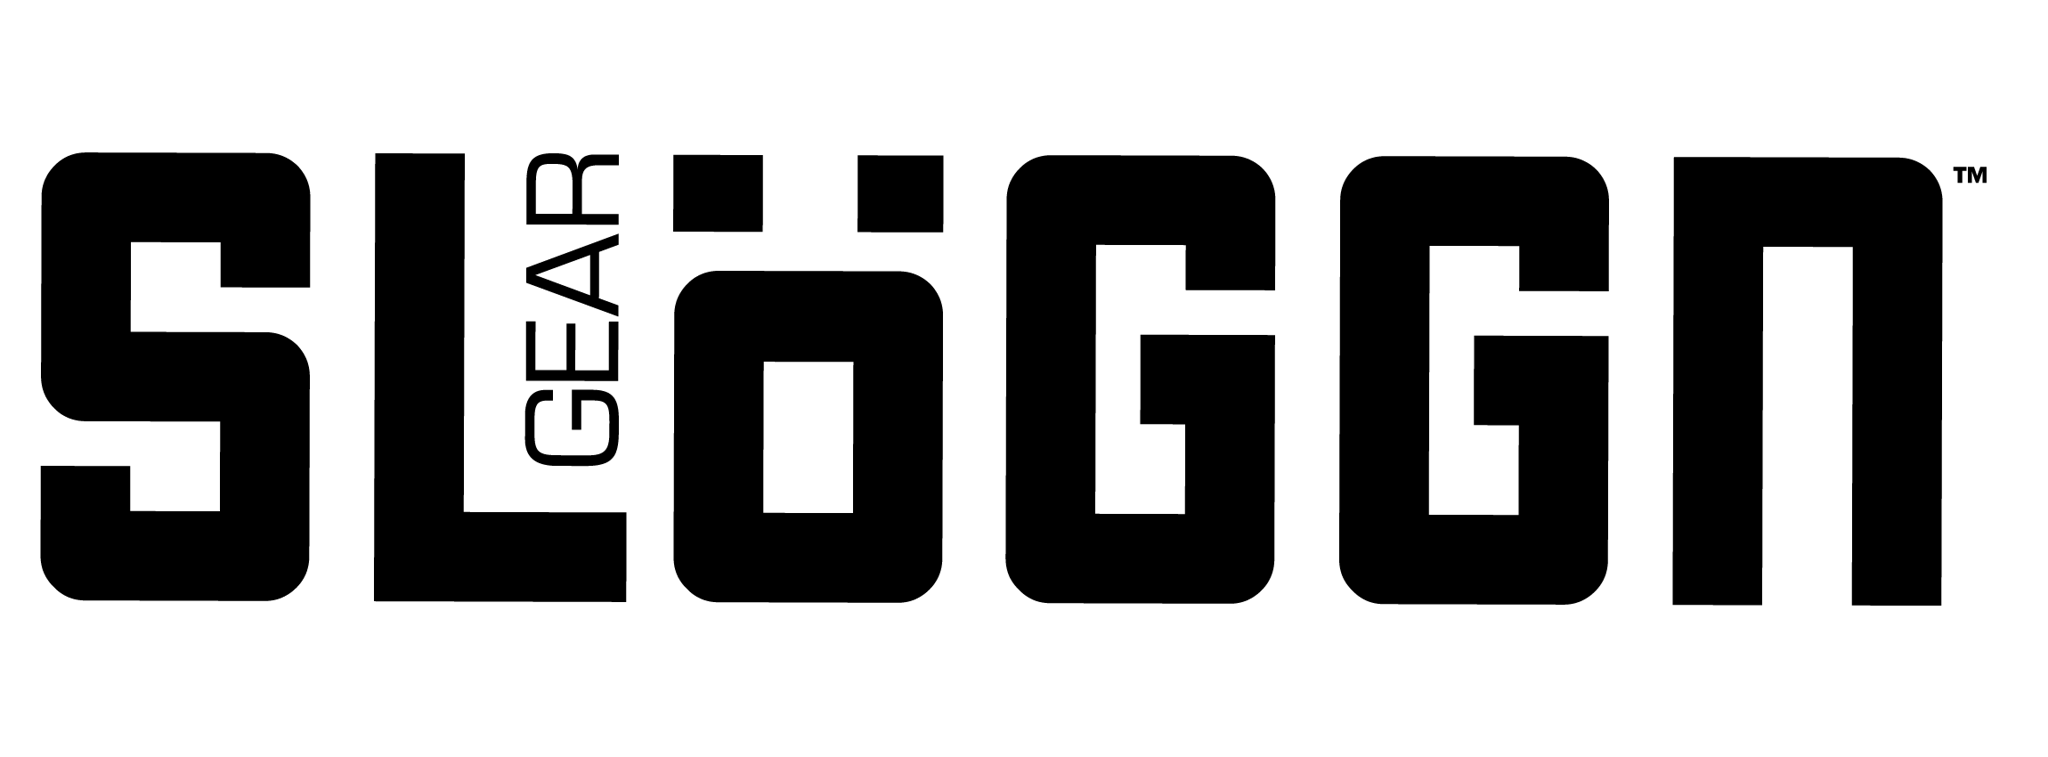 Sloggn Gear logo